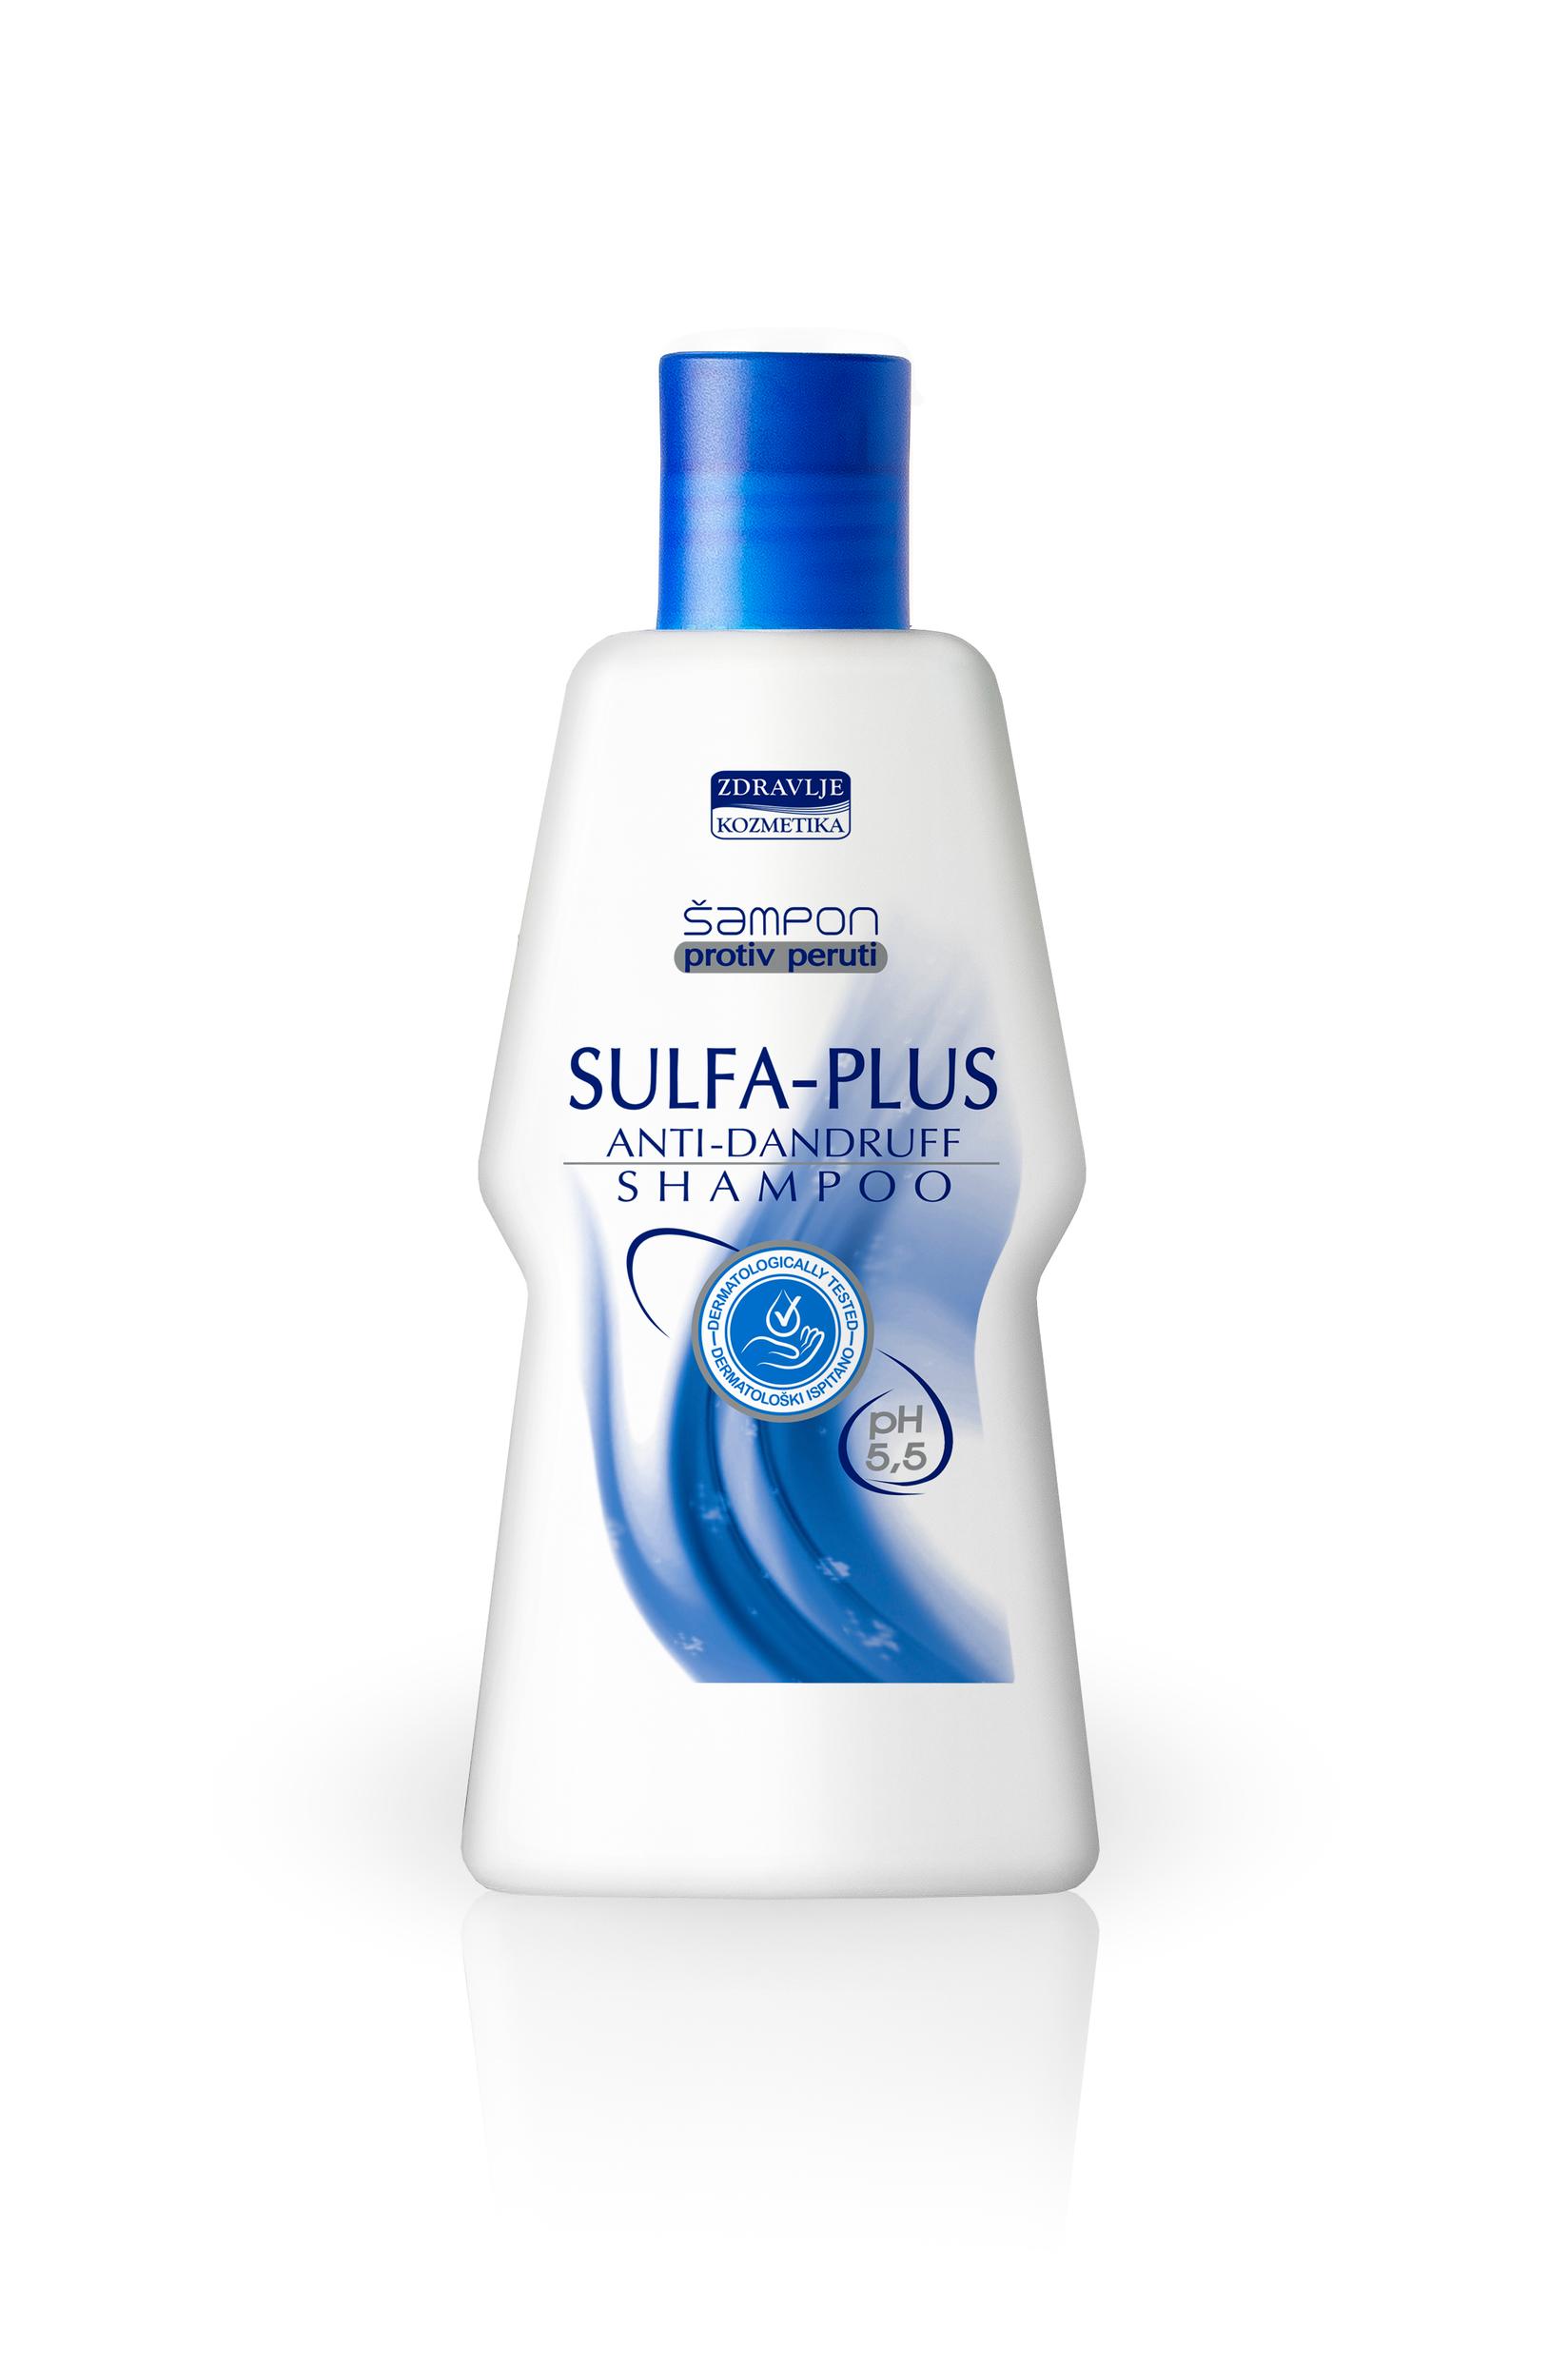 ZDRAVLJE KOZMETIKA Sulfa-Plus Šampon protiv peruti,100 ml